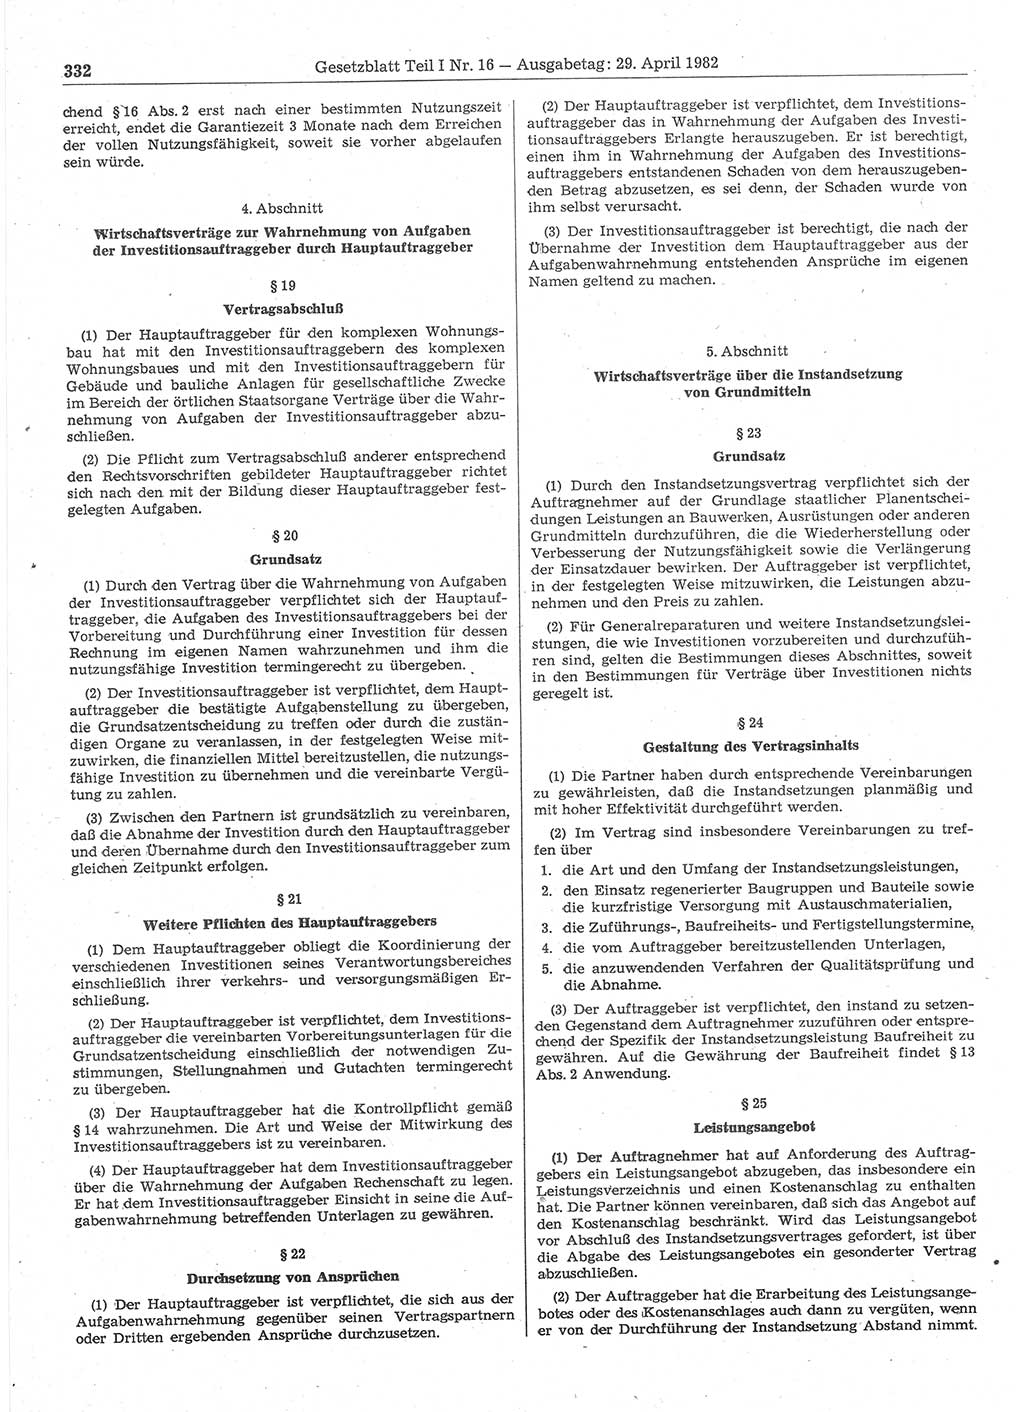 Gesetzblatt (GBl.) der Deutschen Demokratischen Republik (DDR) Teil Ⅰ 1982, Seite 332 (GBl. DDR Ⅰ 1982, S. 332)